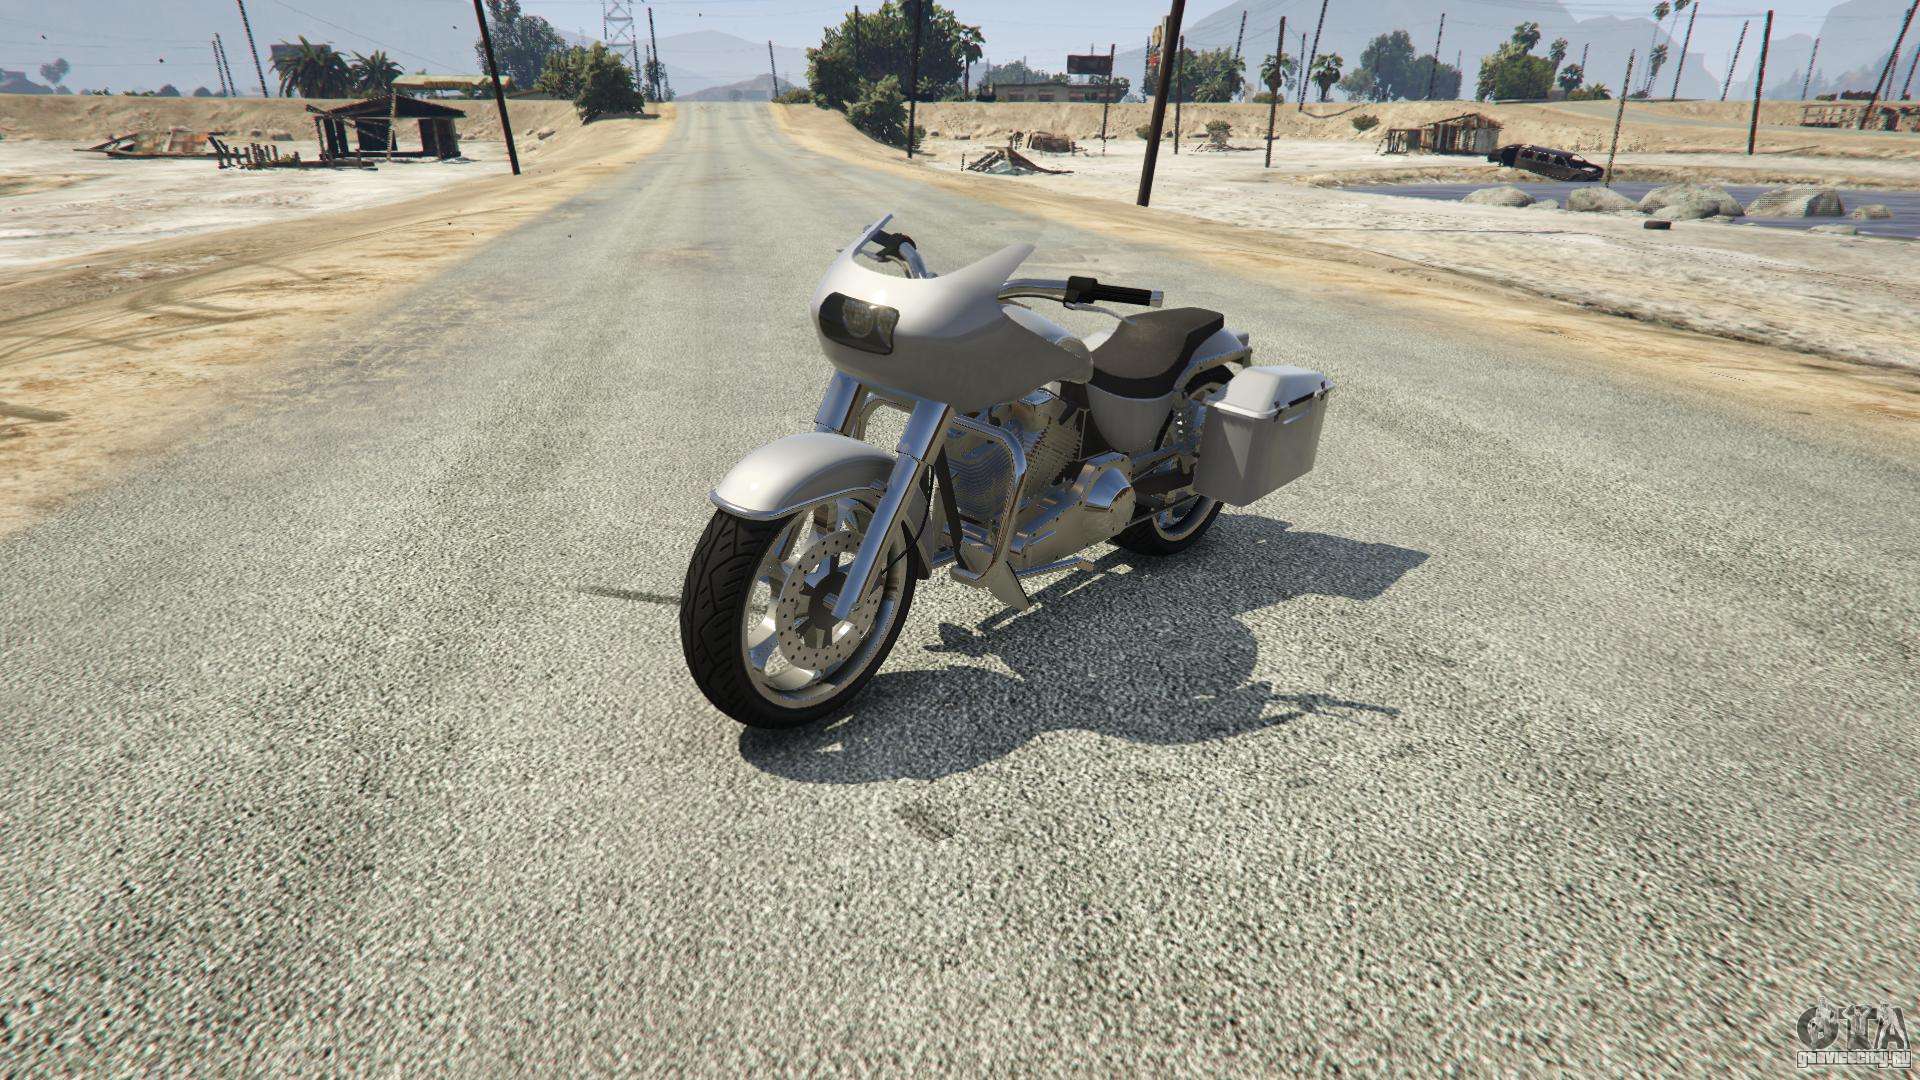 Western Motorcycle Company Bagger из GTA 5 - скриншоты ...